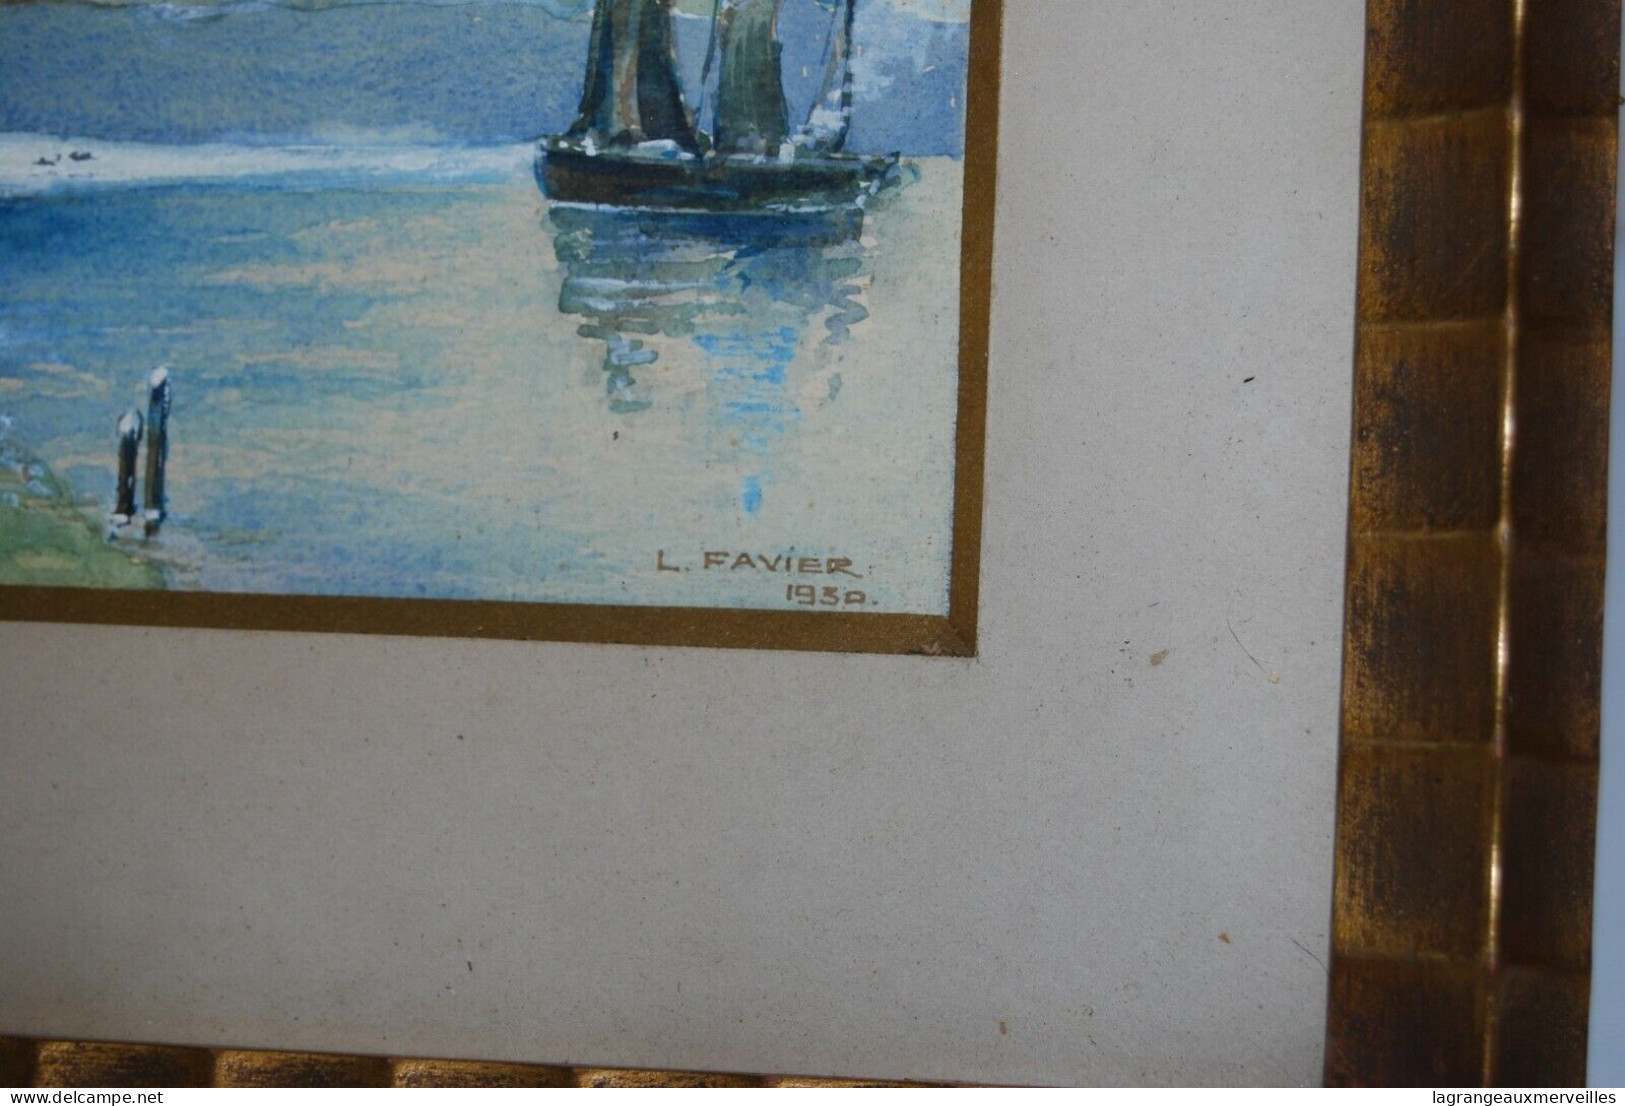 E1 Oeuvre De L Favier - Aquarelle 1930 - Le Moulin Et Le Bateau - Watercolours